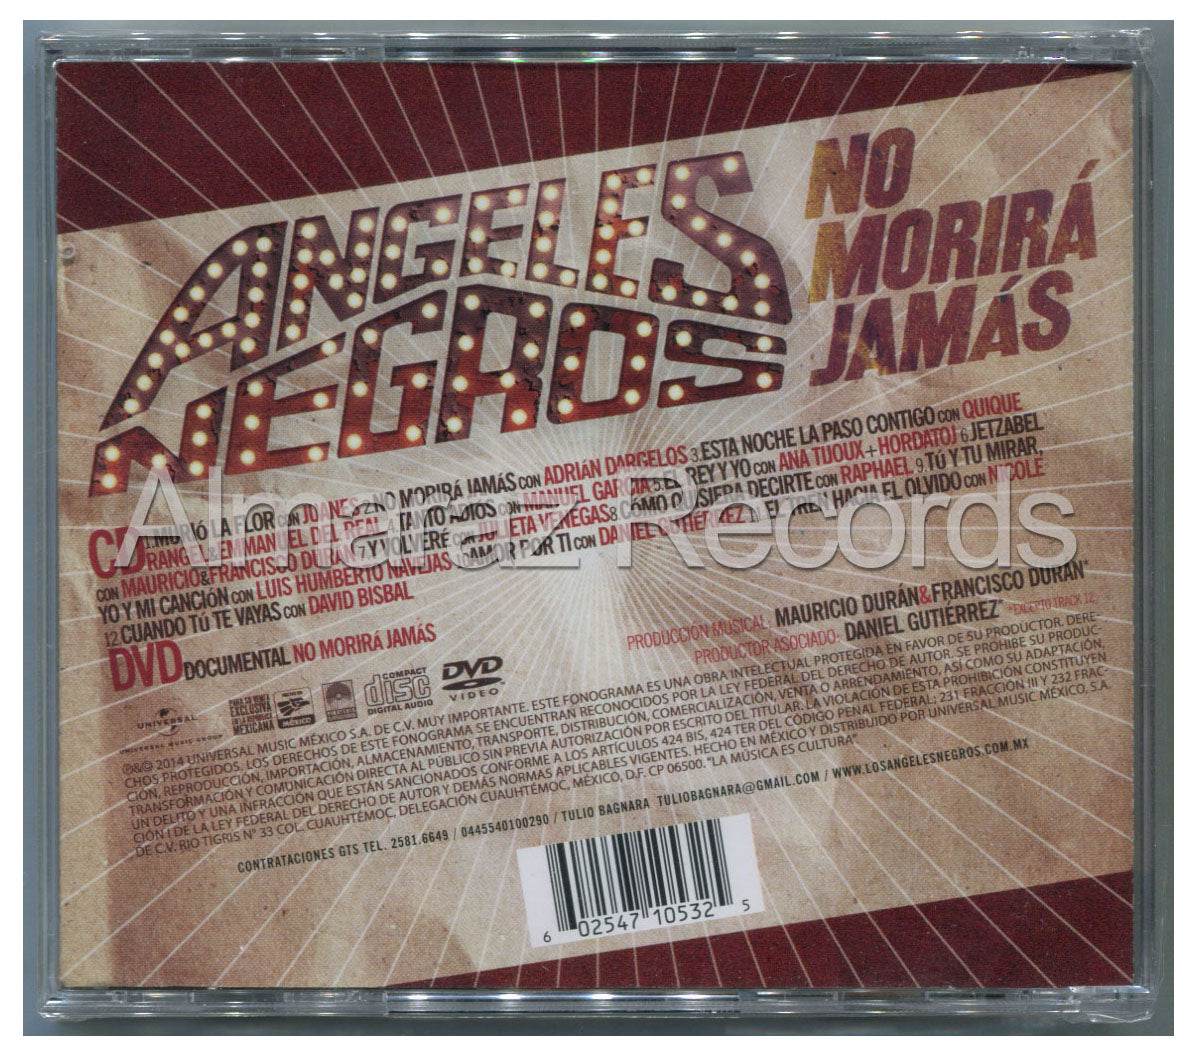 Los Angeles Negros No Morira Jamas CD+DVD - Almaraz Records | Tienda de Discos y Películas
 - 2